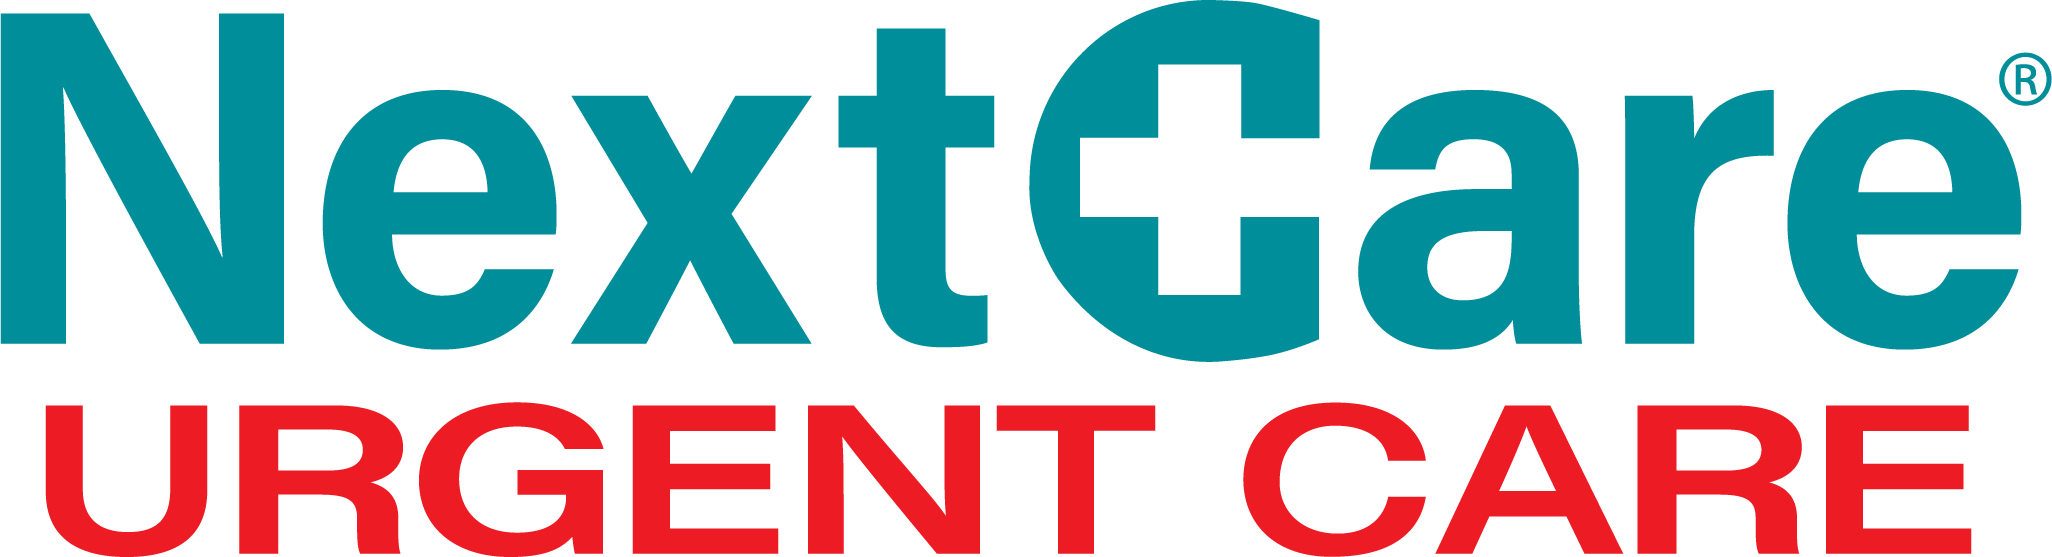 NextCare Urgent Care - Houston Logo